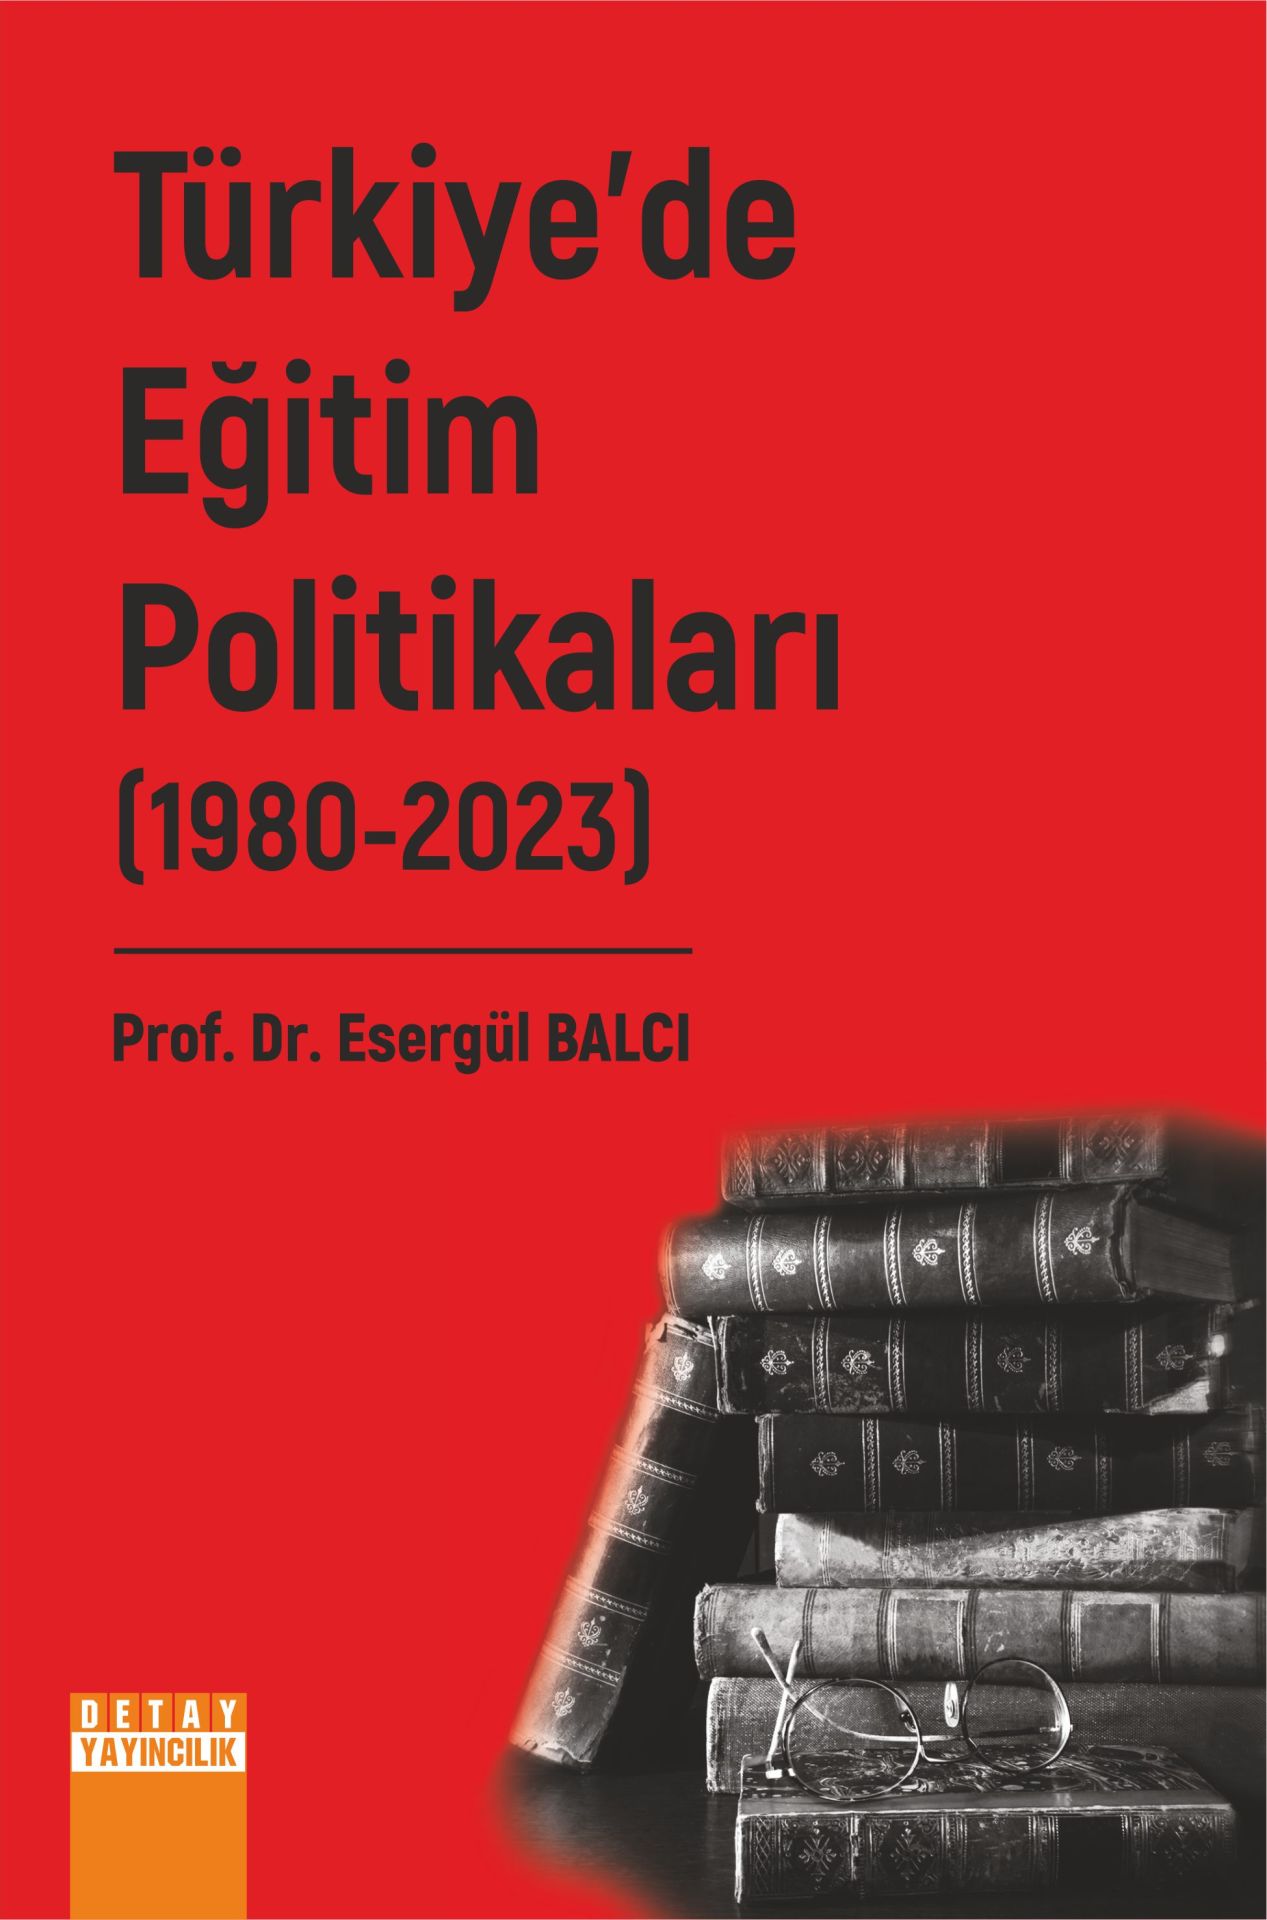 TÜRKİYE’DE EĞİTİM POLİTİKALARI II. CİLT (1980-2023)